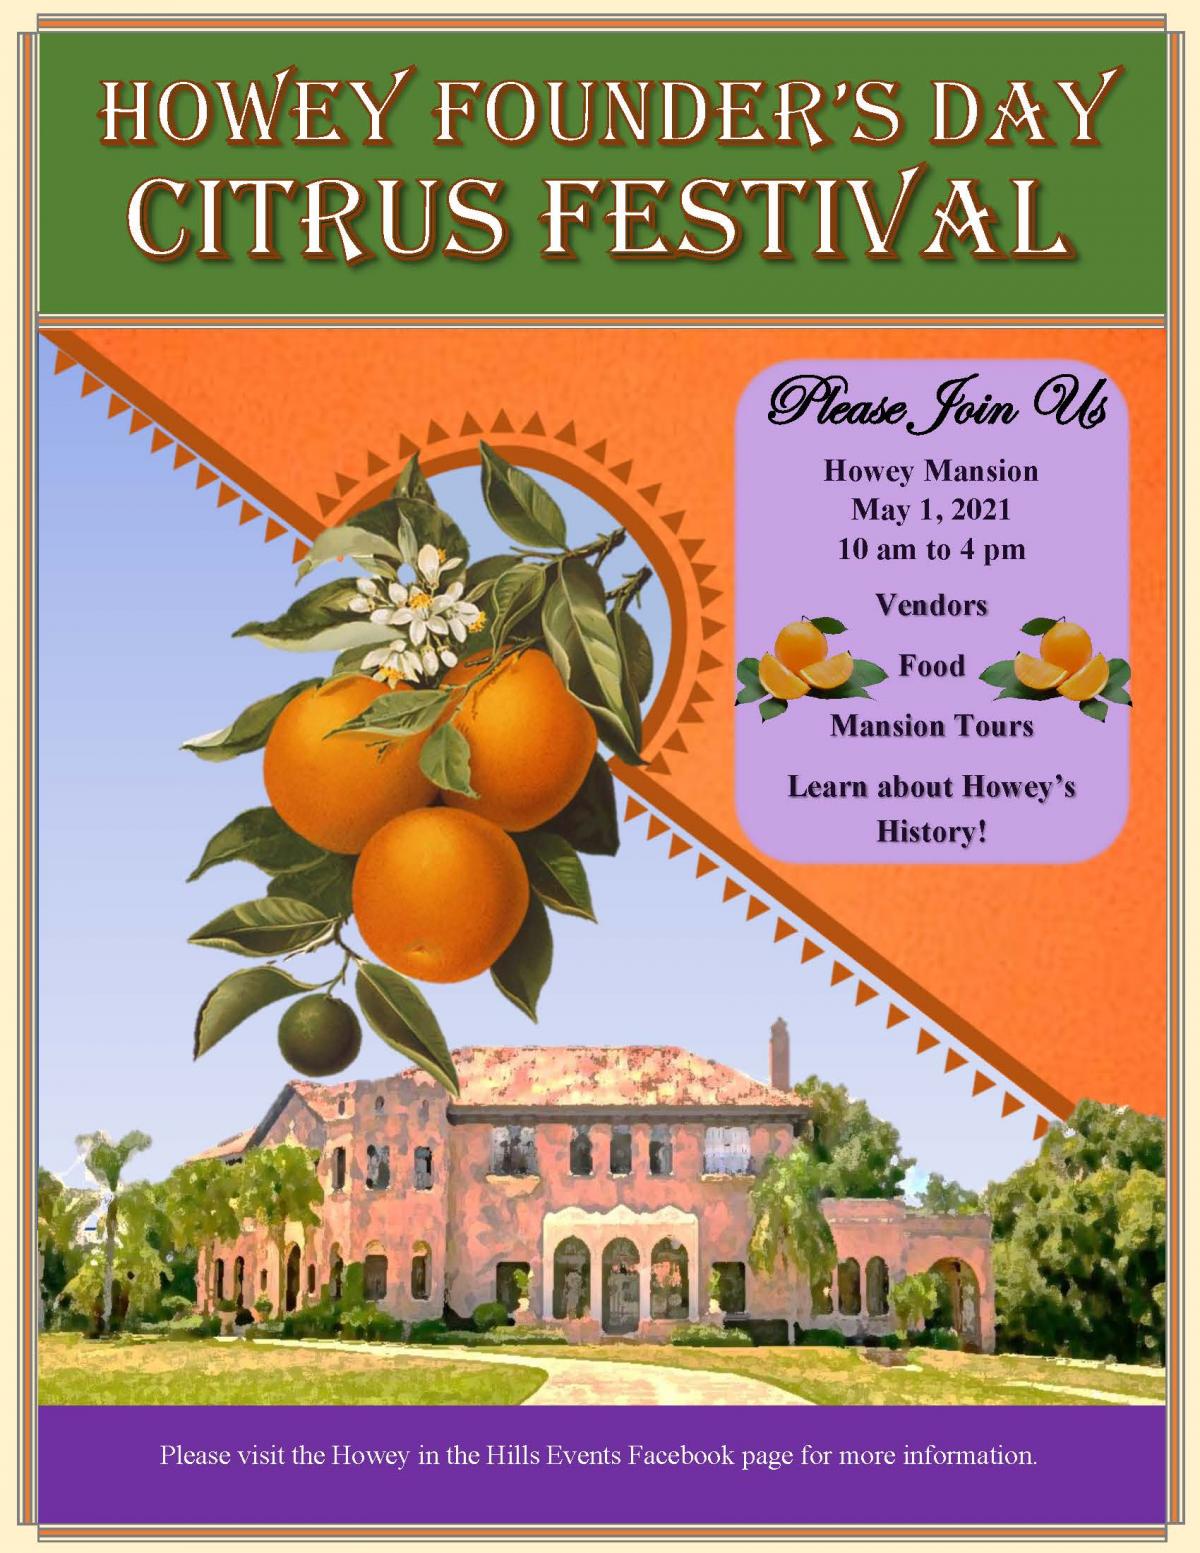 Howey Founder's Day Citrus Festival